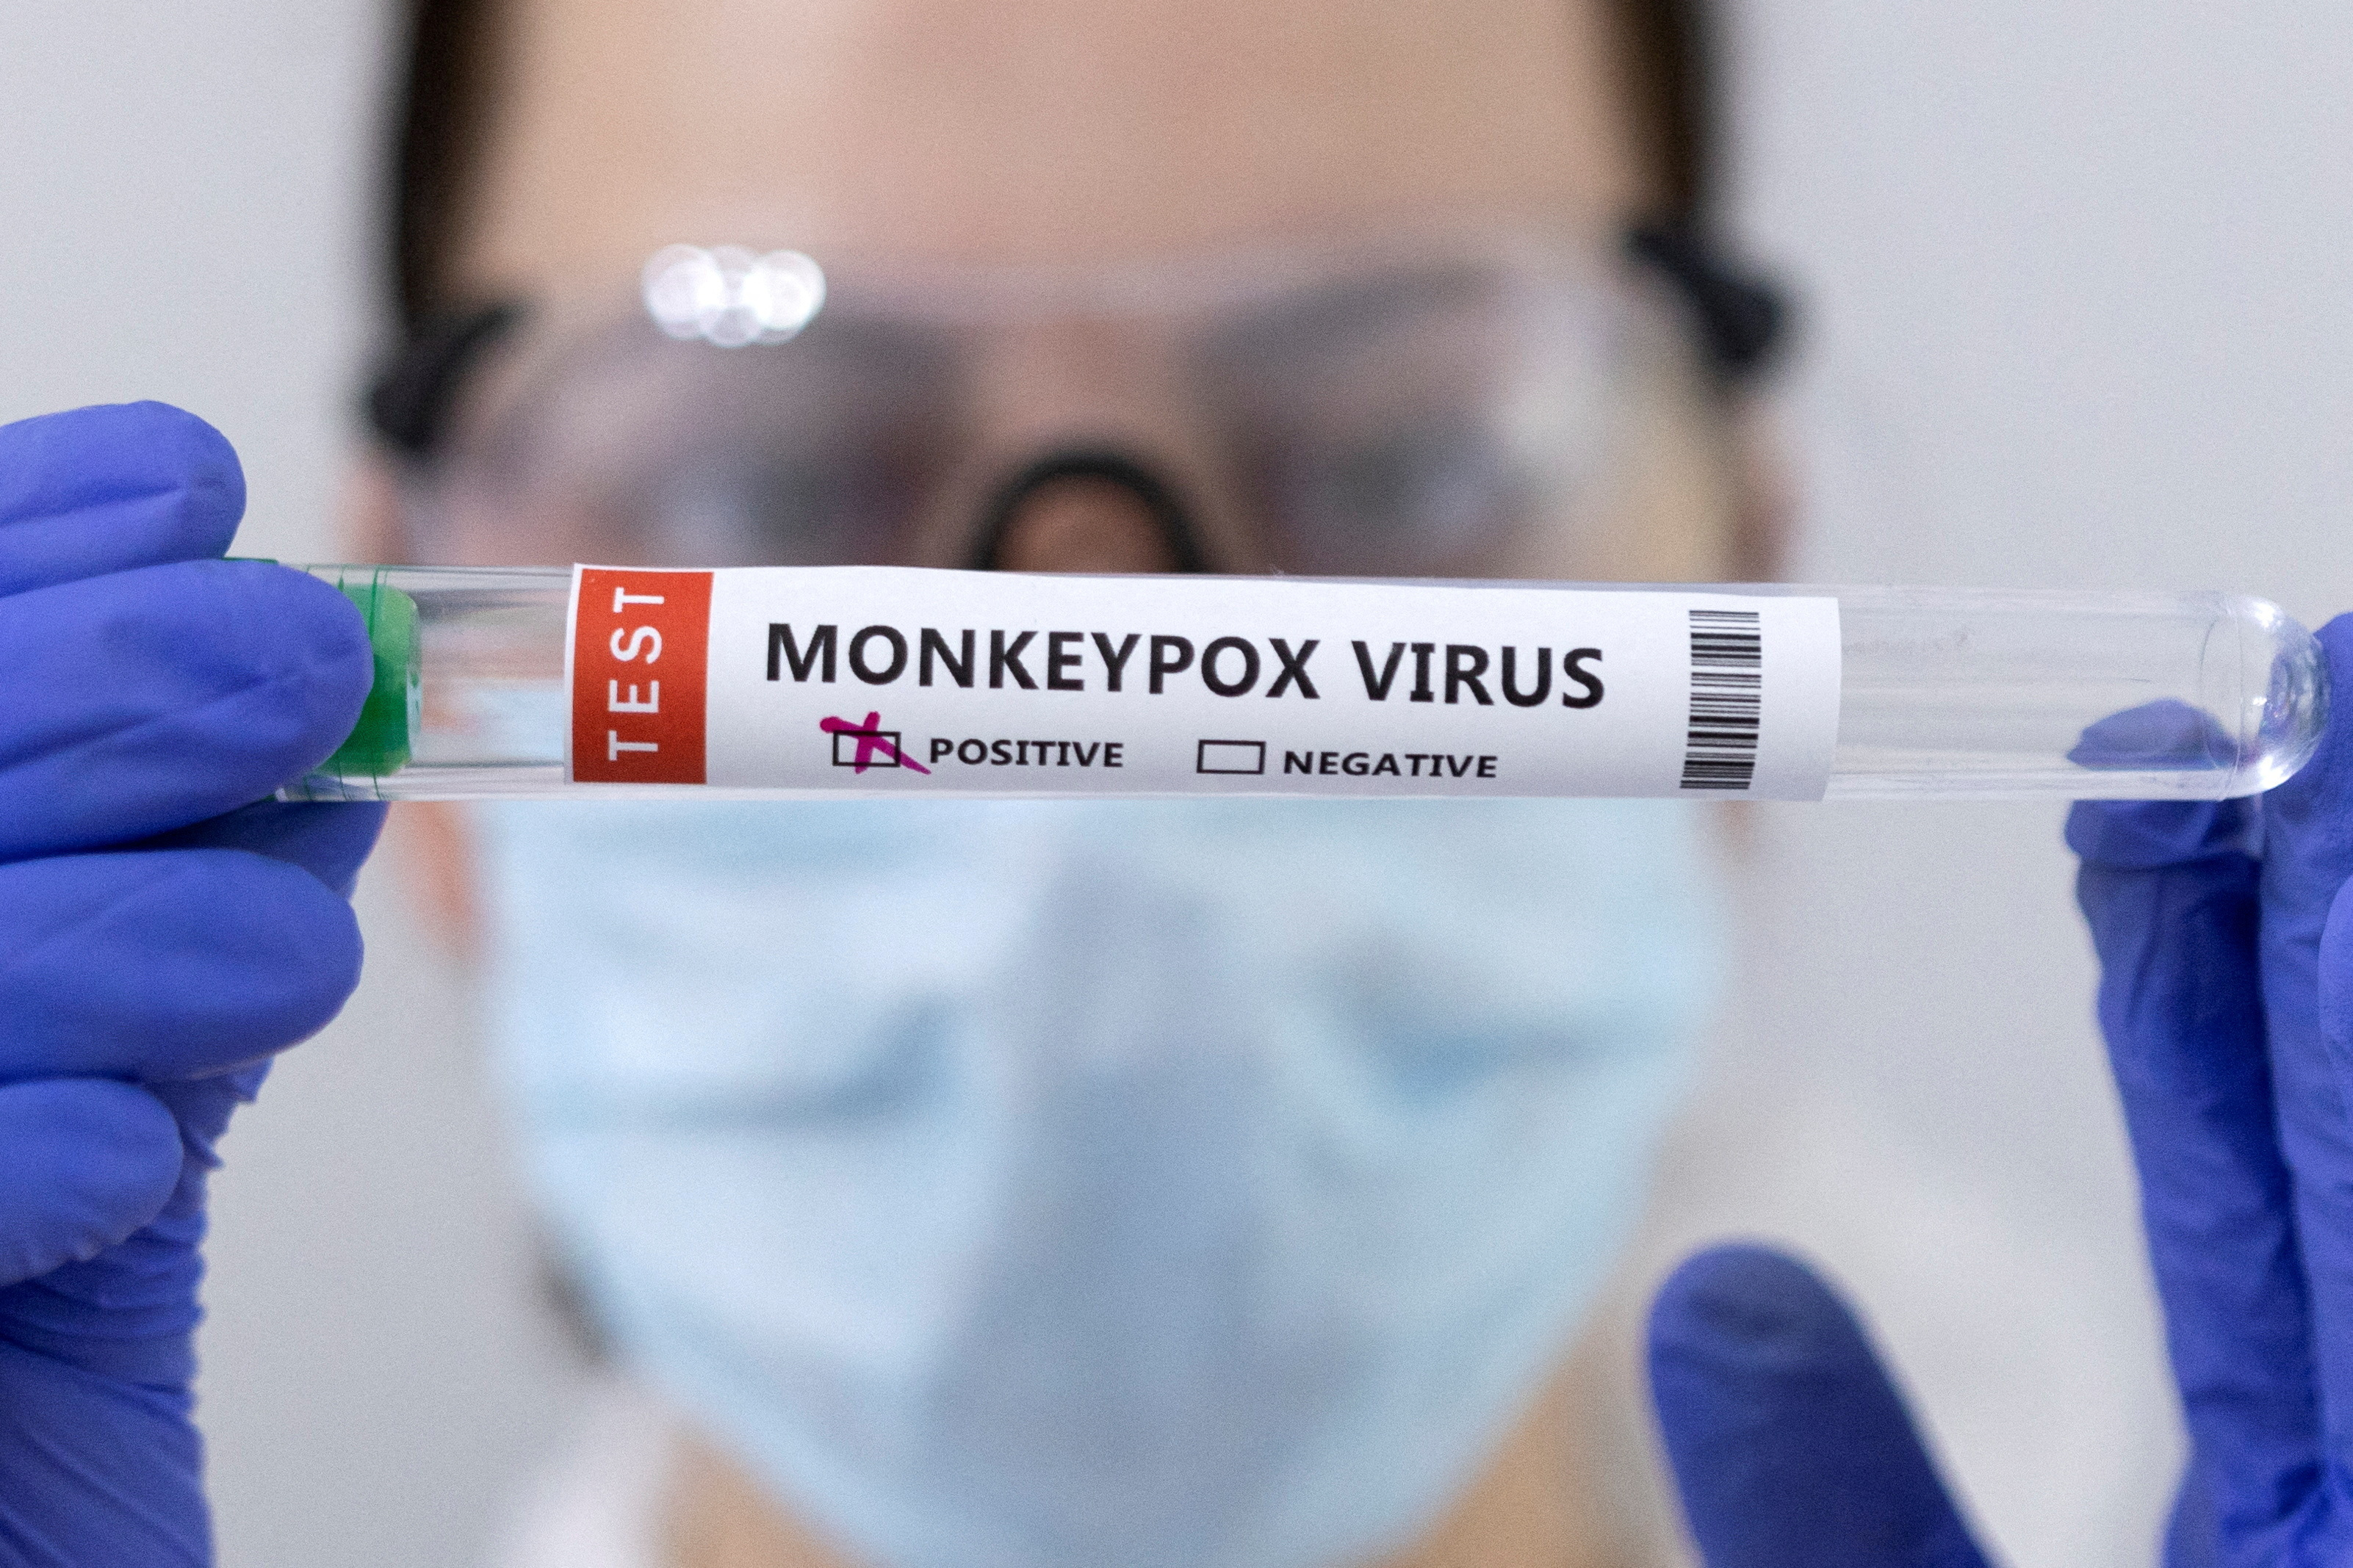 Viruela del mono: 5 claves sobre la transmisión que aportan los estudios científicos realizados en los pacientes